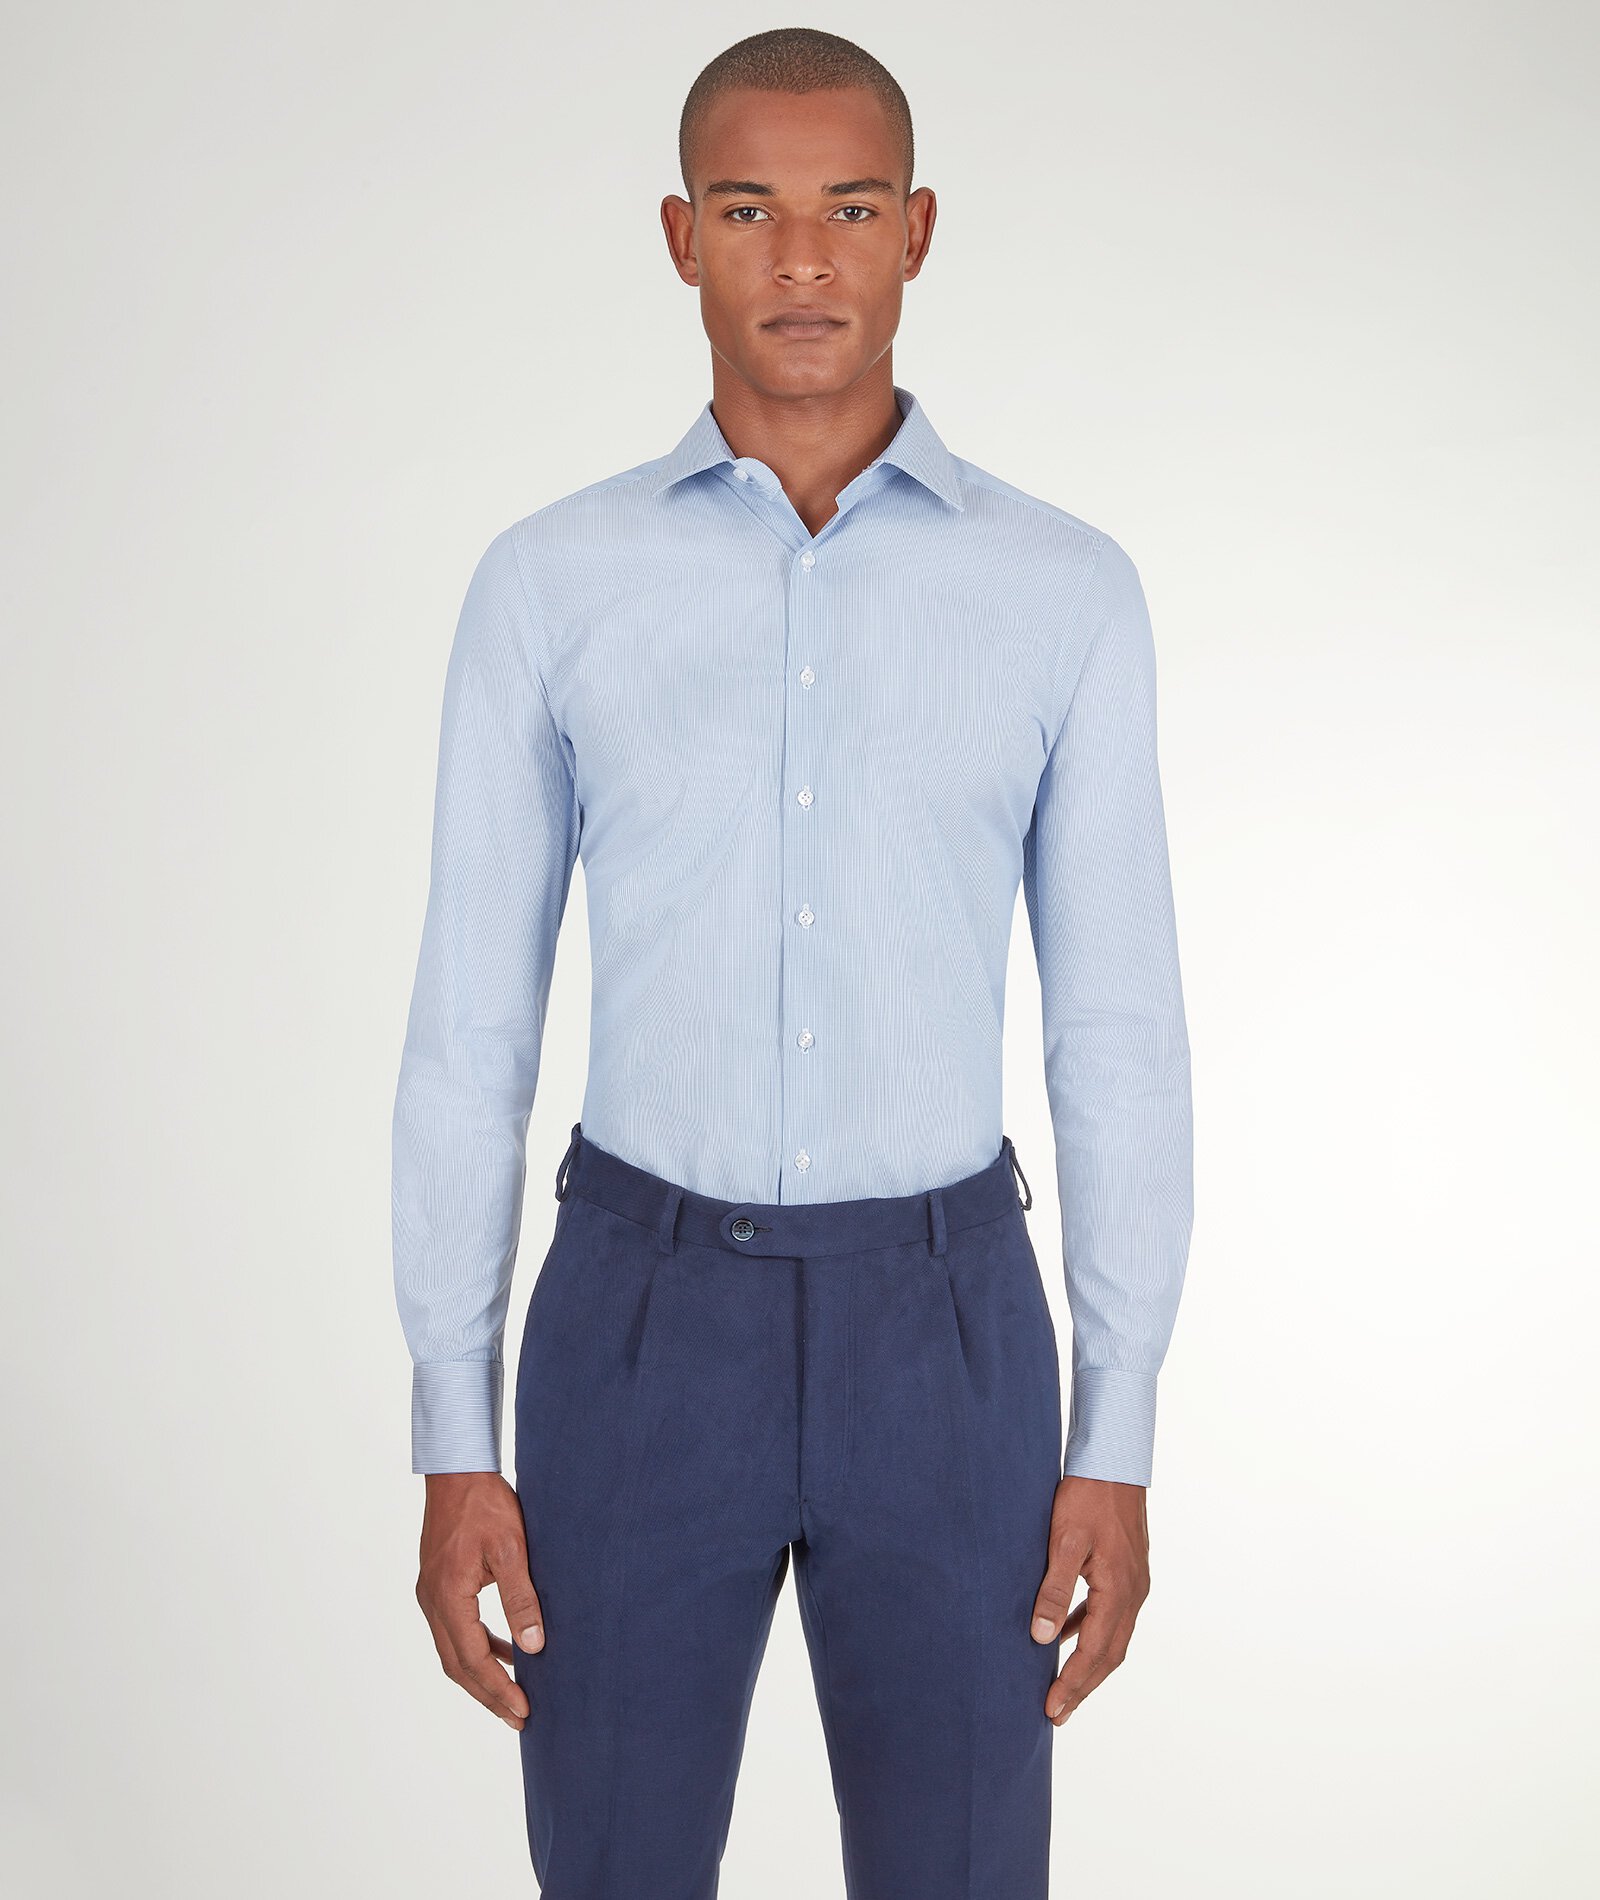 Image of Camicia da uomo su misura, Alfatex, Azzurra in Pin Point di Cotone, Quattro Stagioni | Lanieri